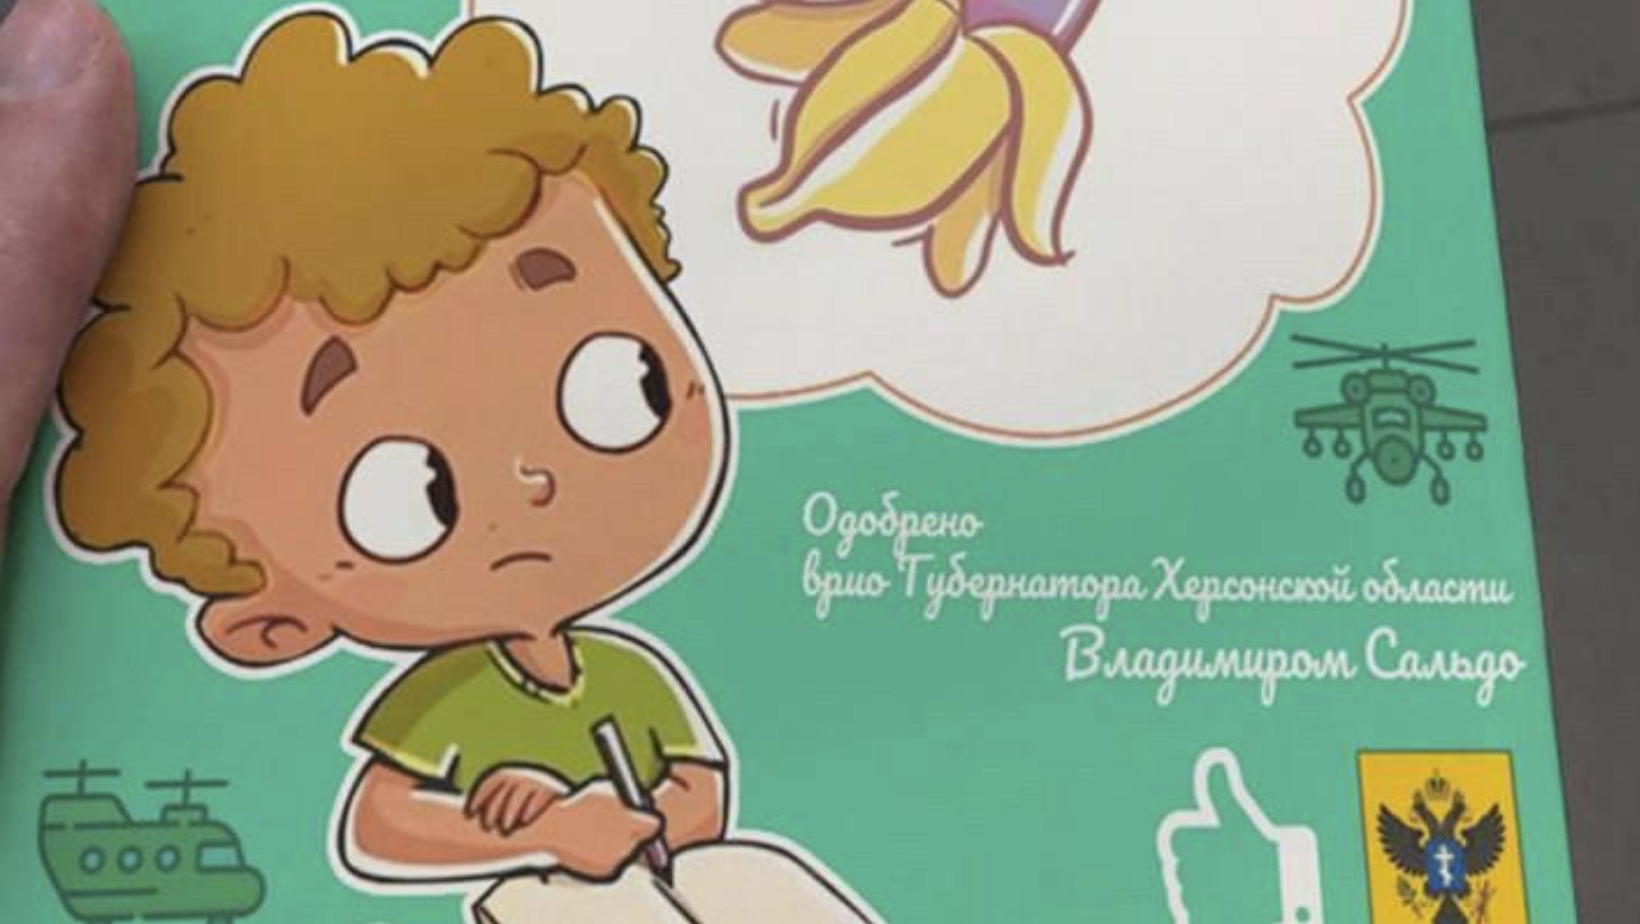 Правда ли, что при поддержке Владимира Сальдо вышла книга для детей «Как не  поддаться гей-пропаганде»? - Проверено.Медиа